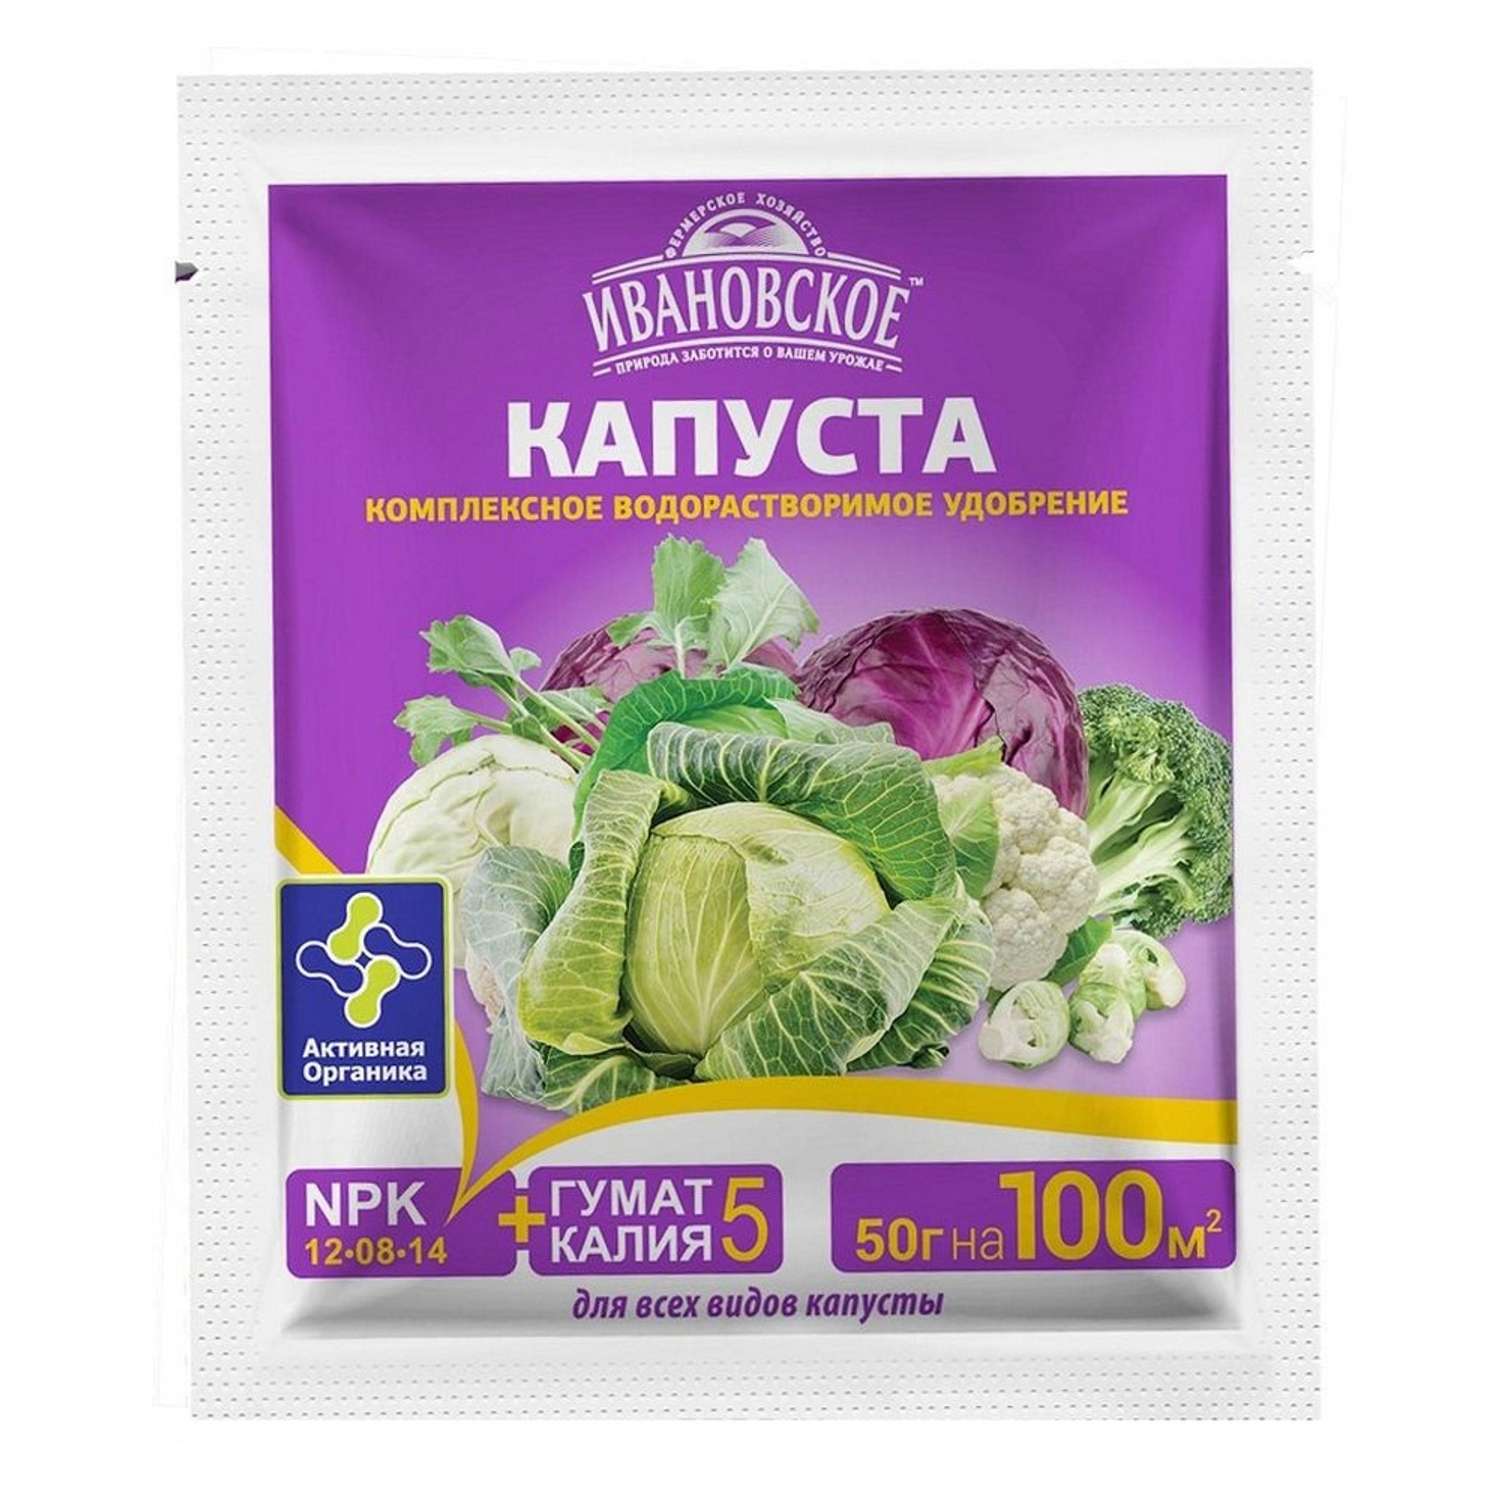 Удобрение Фермер Хозяйство Ивановское Капуста для всех видов капусты 50г - фото 1